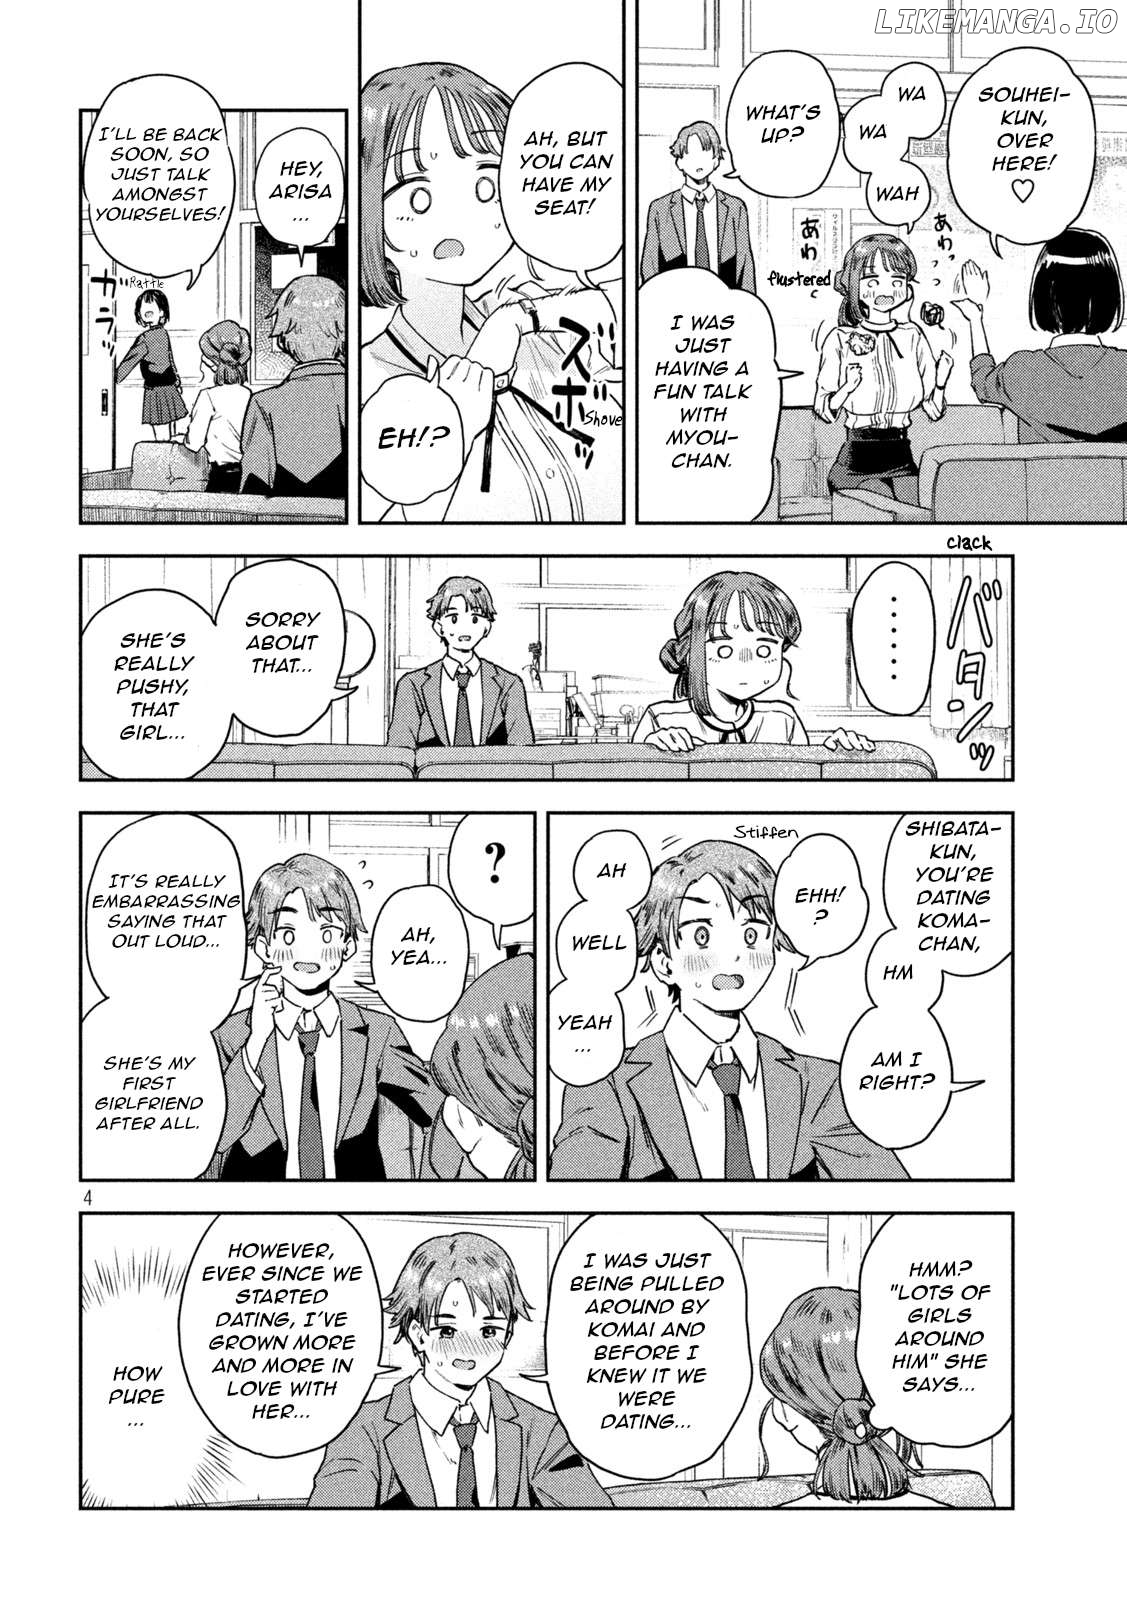 Miyo-Chan Sensei Said So Chapter 7 - page 4